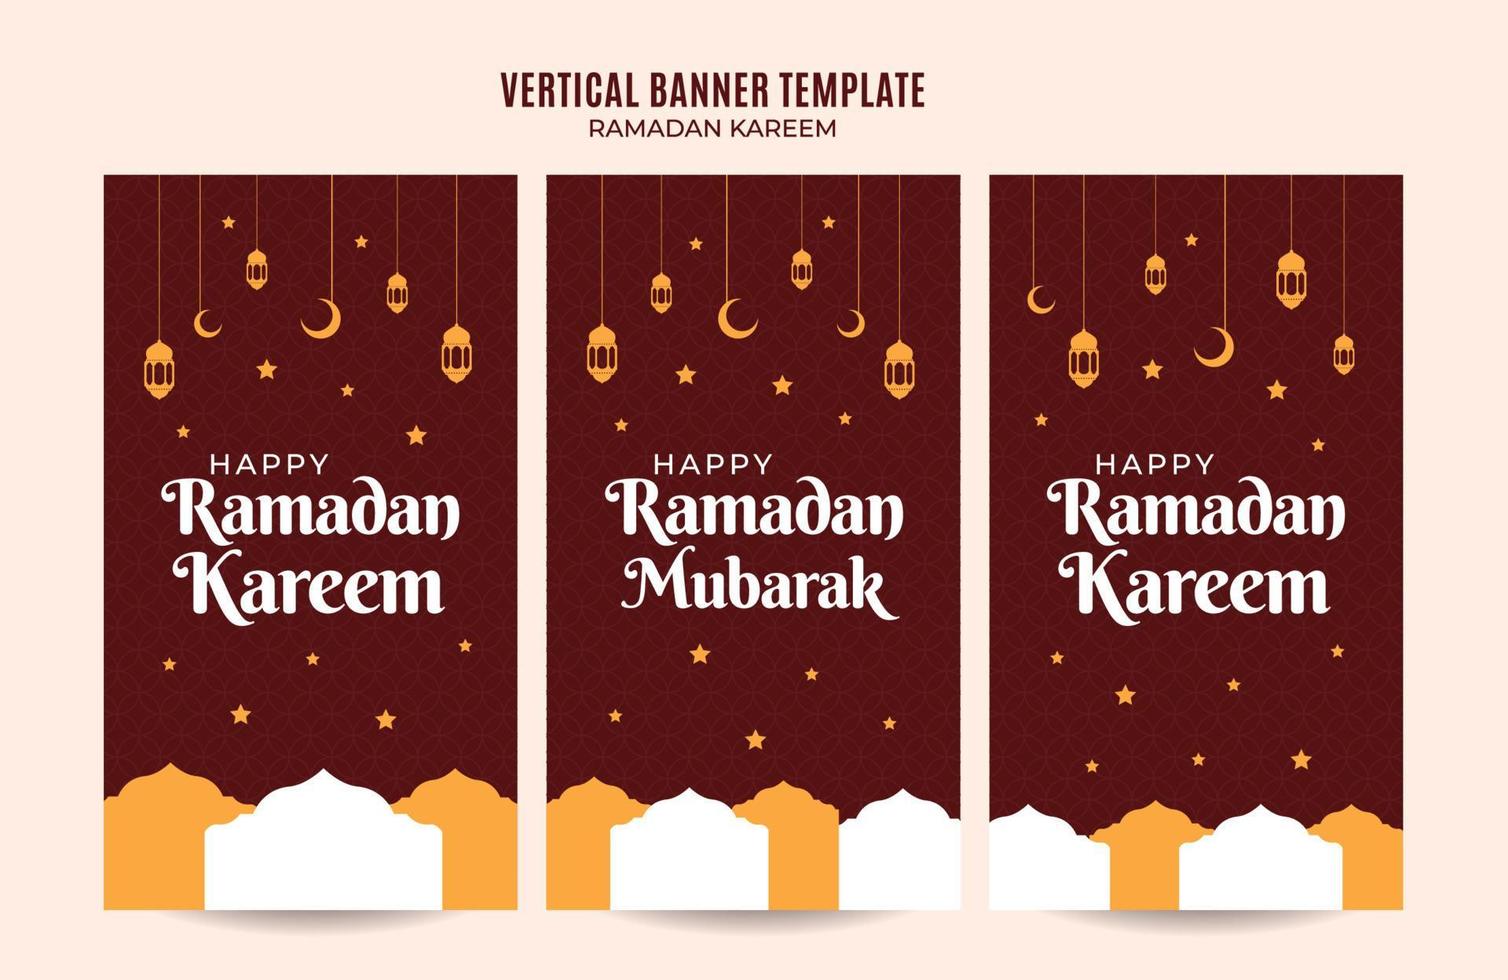 área e fundo do espaço vertical do banner da web do ramadan kareem vetor